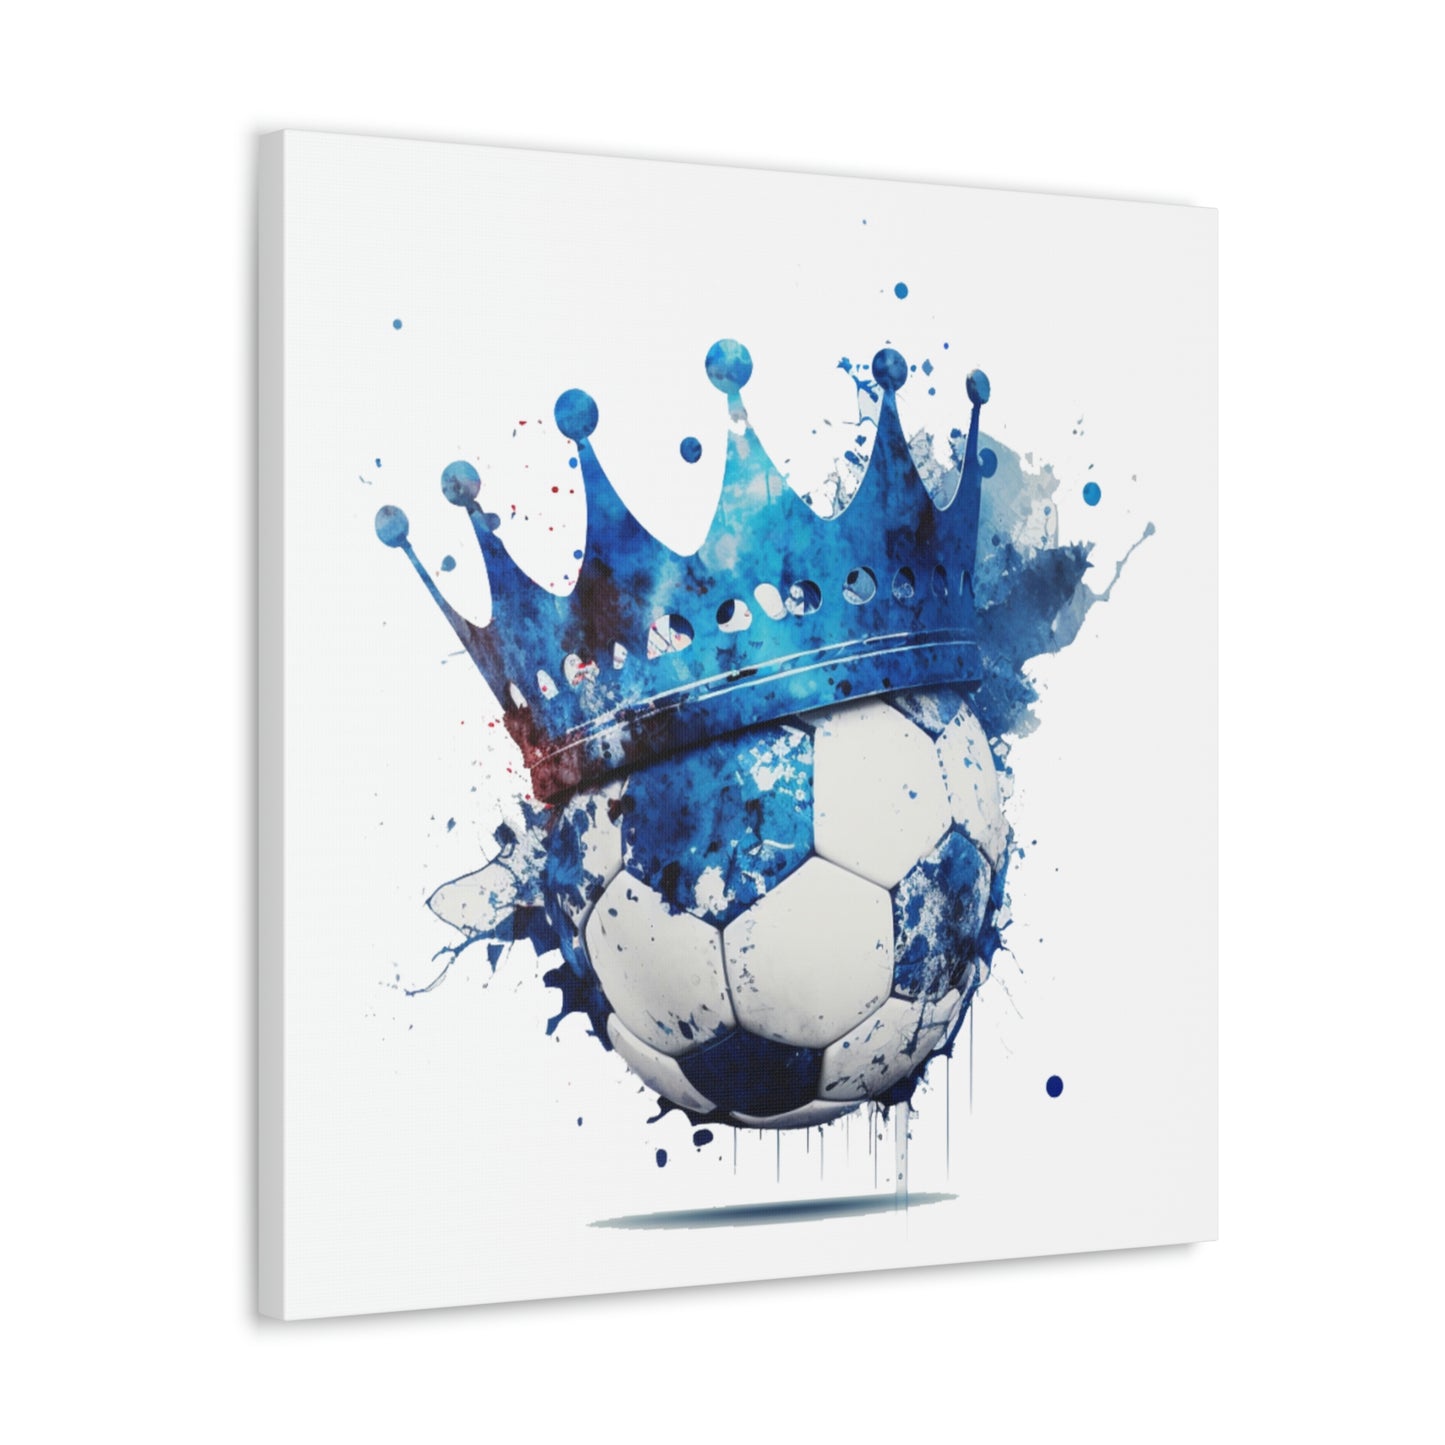 Soccer Crown Splatter